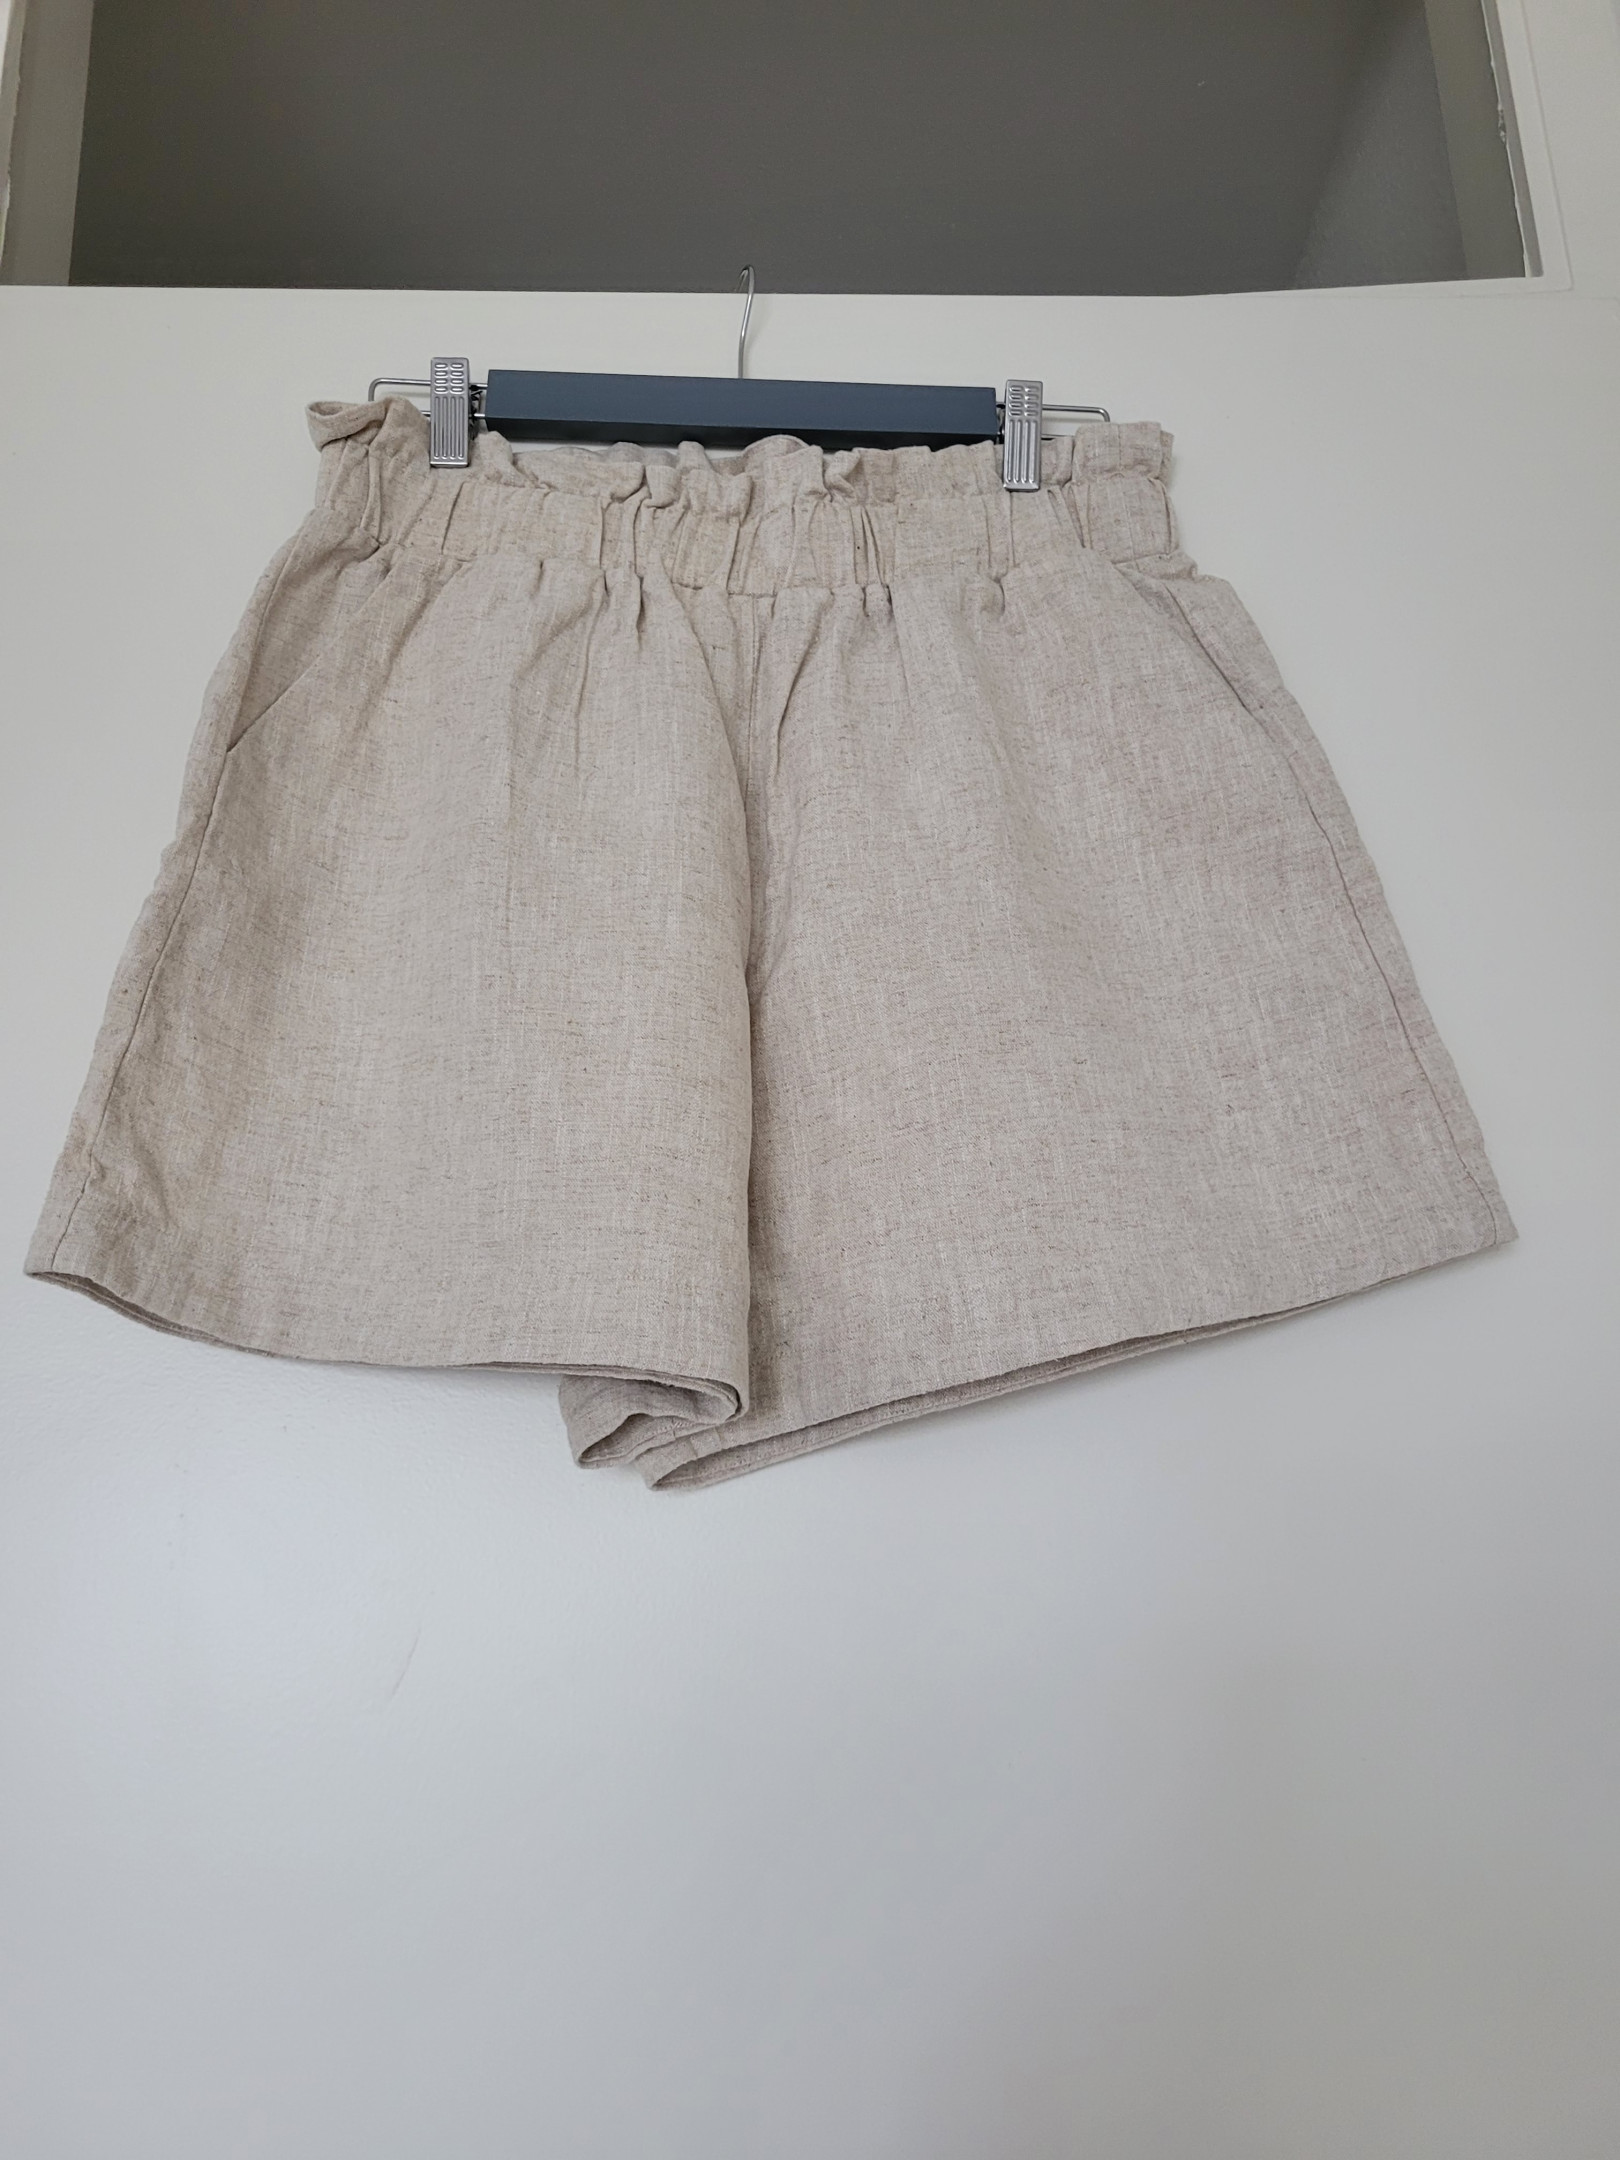 Beige linen/cotton shorts Size 42